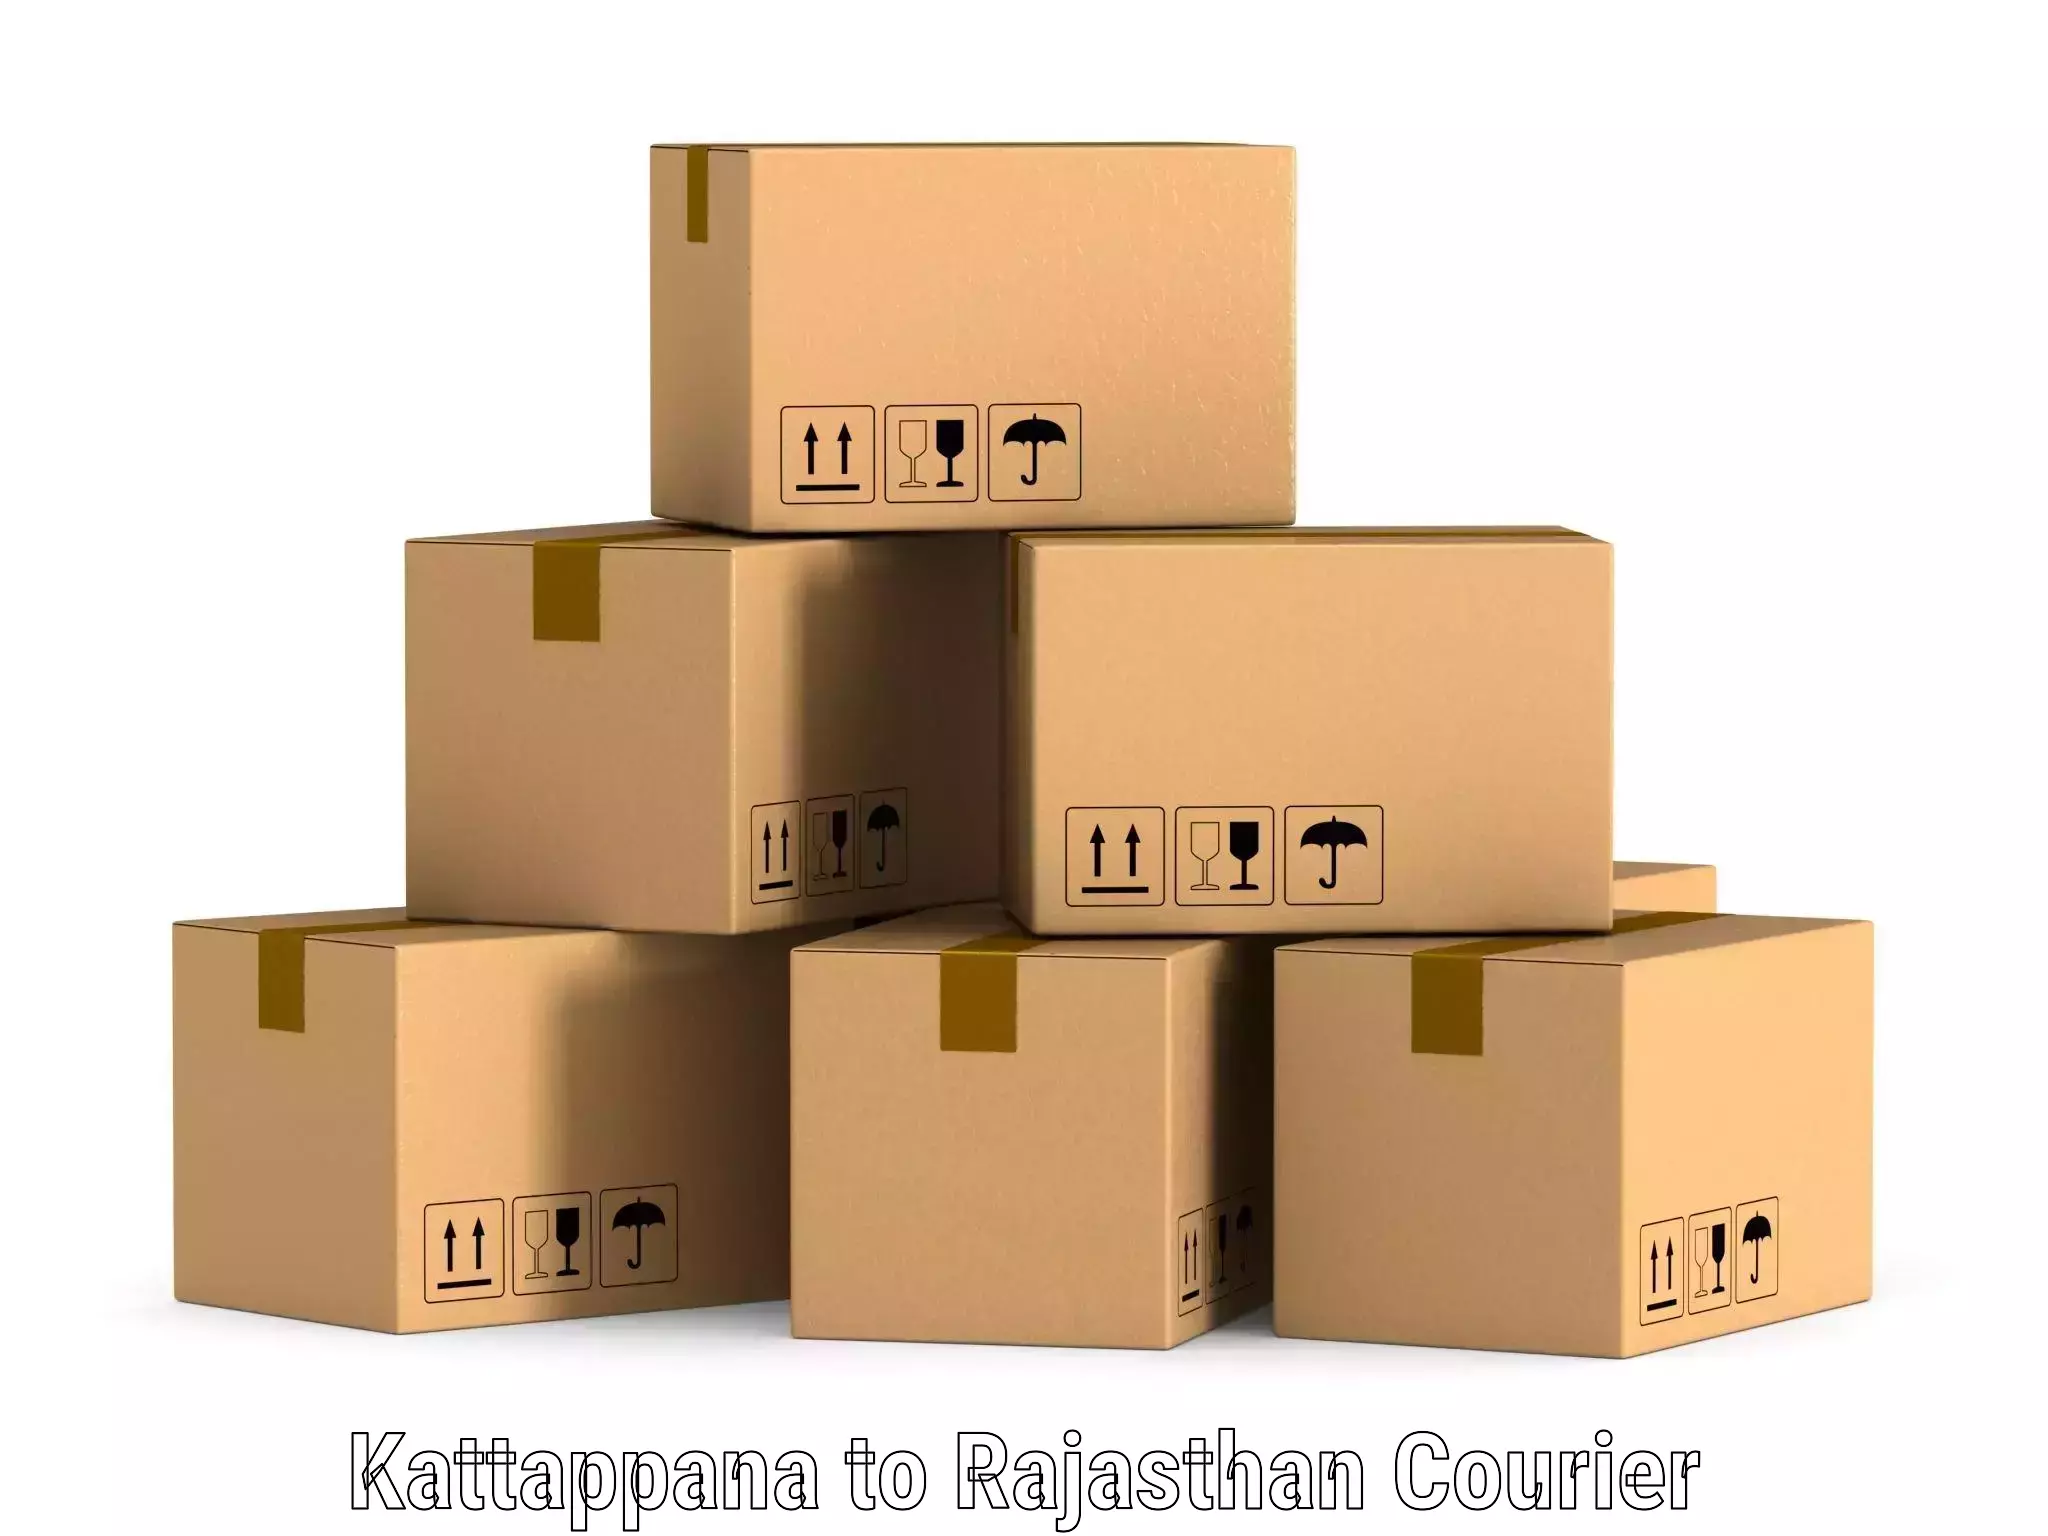 Cost-effective courier options Kattappana to Neem ka Thana